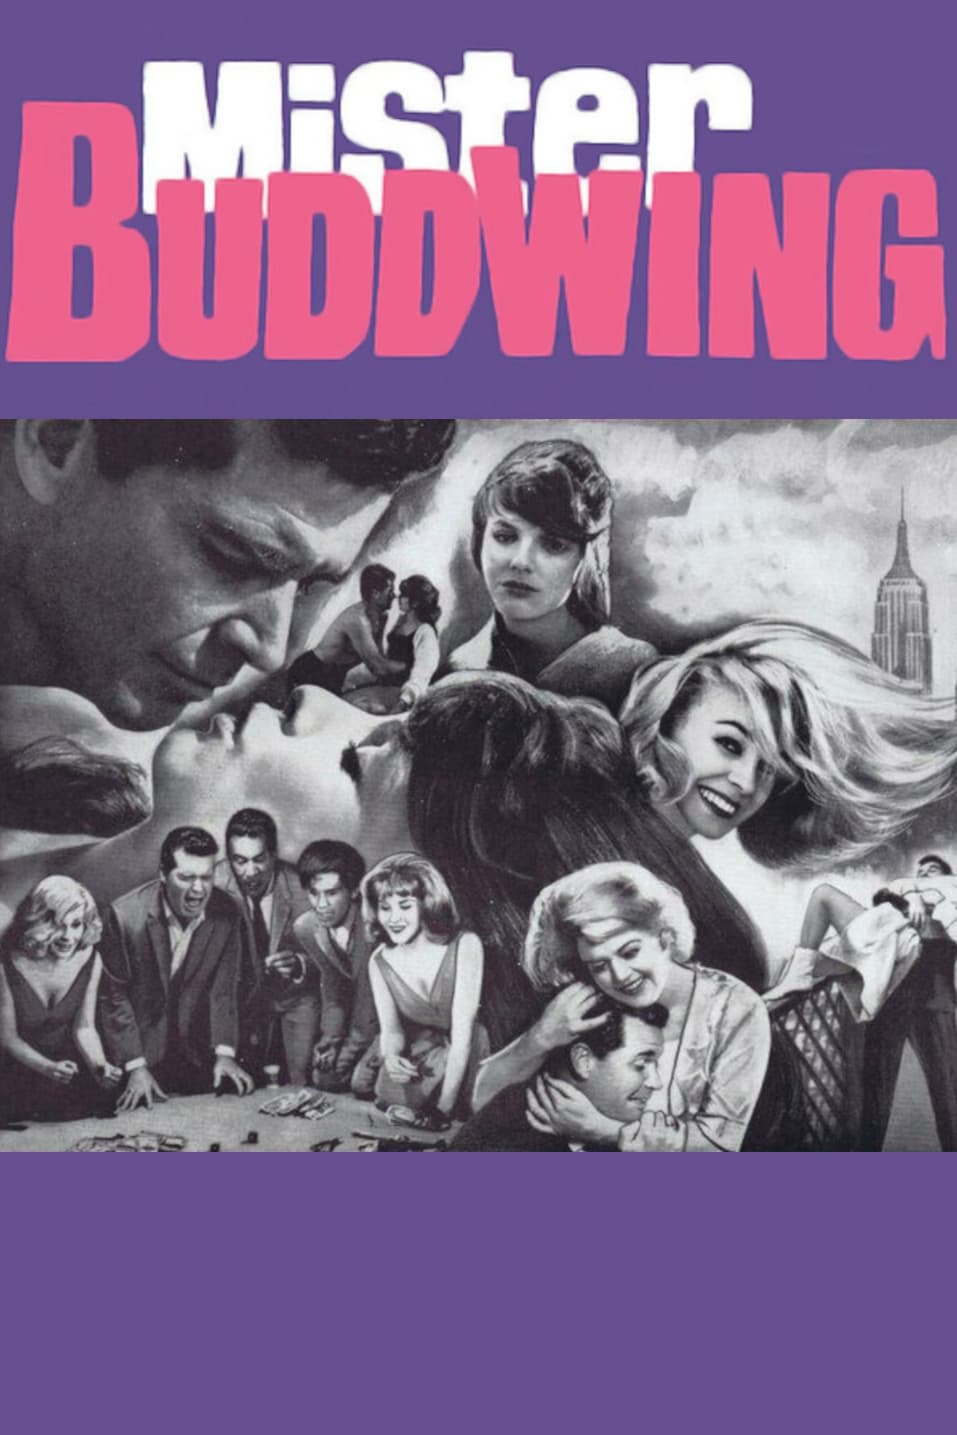 Mister Buddwing (1966)